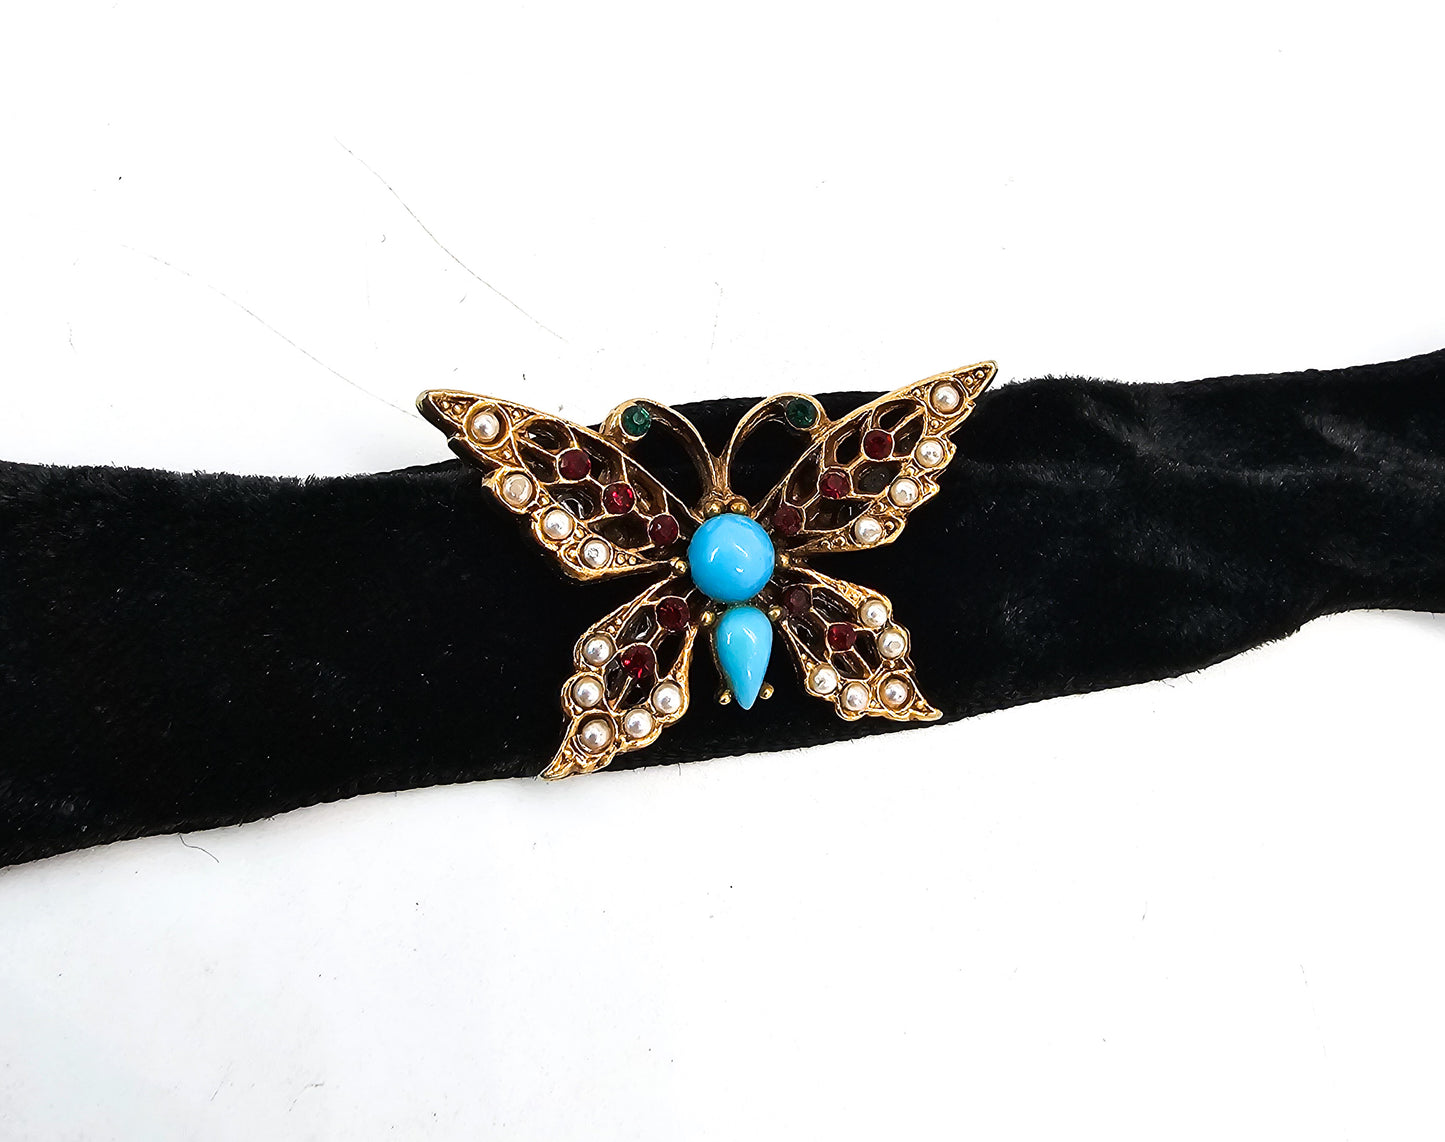 Arthur Pepper Art Rhinestone Butterfly black velvet vintage choker necklace